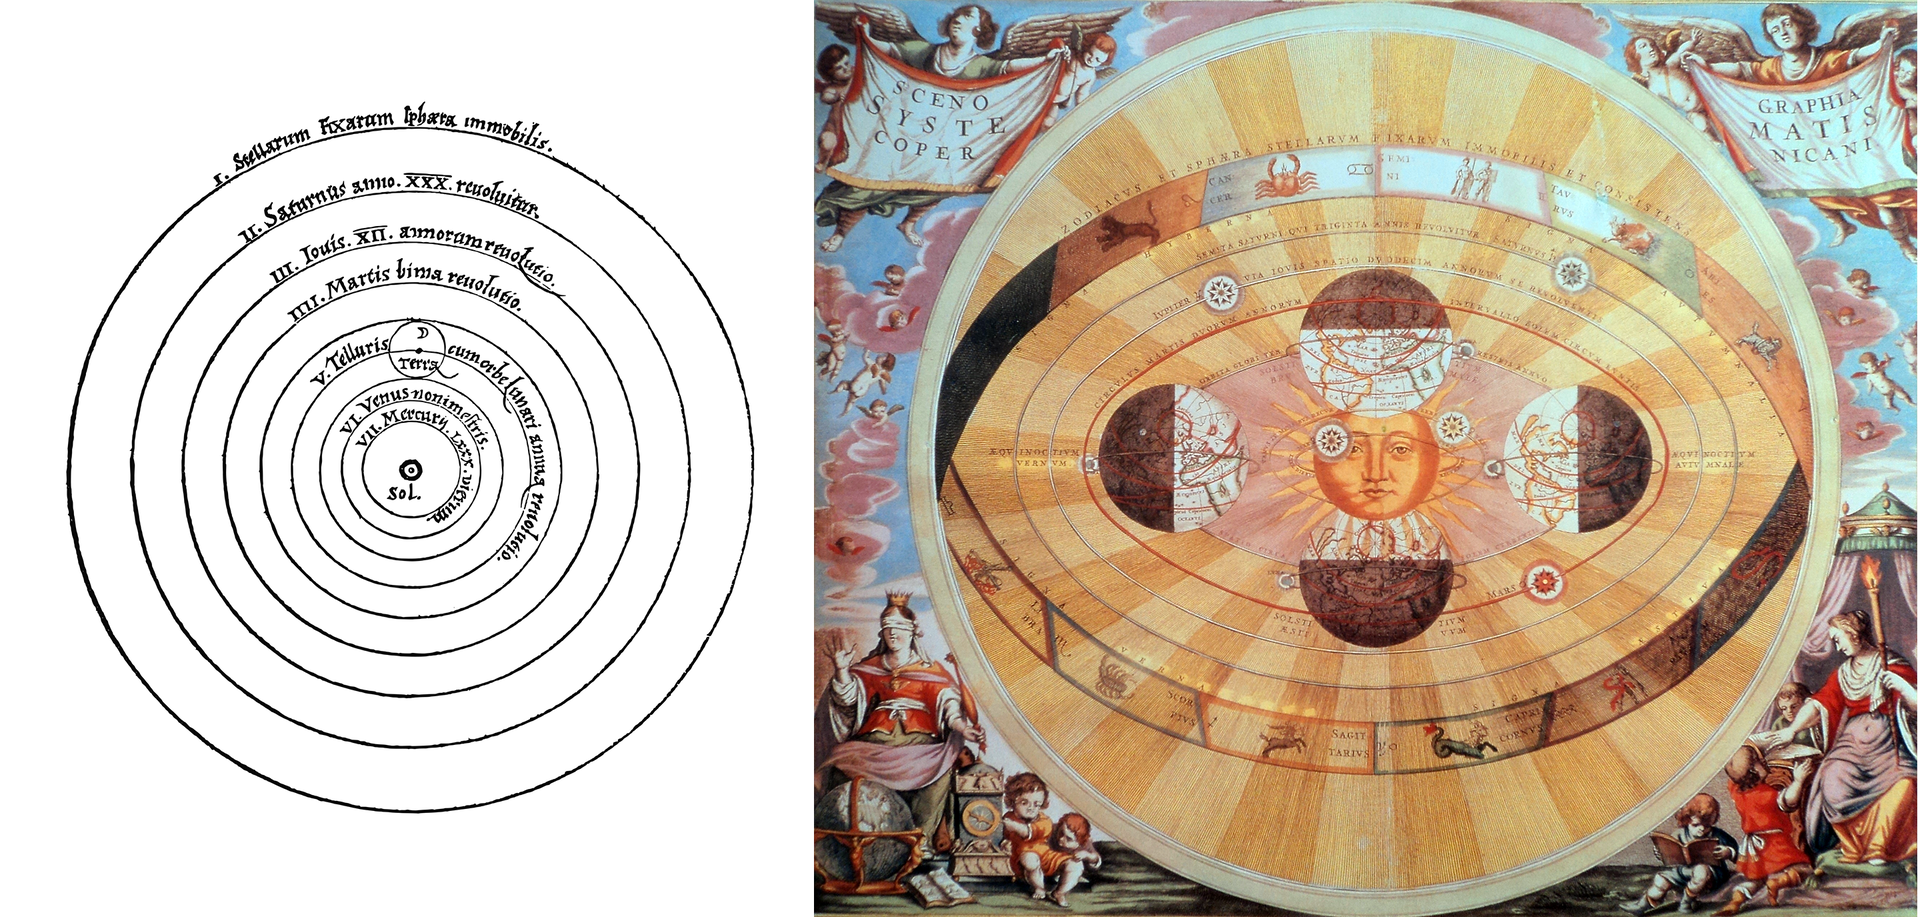 Ilustracja po lewej stronie, to szkic Układu Słonecznego zgodny z teorią heliocentryczną Mikołaja Kopernika. W centrum zaznaczono Słońce, a dookoła niego na okręgach opisano planety Układu Słonecznego. Ilustracja obok przedstawia artystyczną kolorową wizję Układu Słonecznego. Dookoła Słońca narysowano owalne orbity planet. Na pierwszej orbicie znajduje się Ziemia oświetlona w czterech różnych pozycjach.